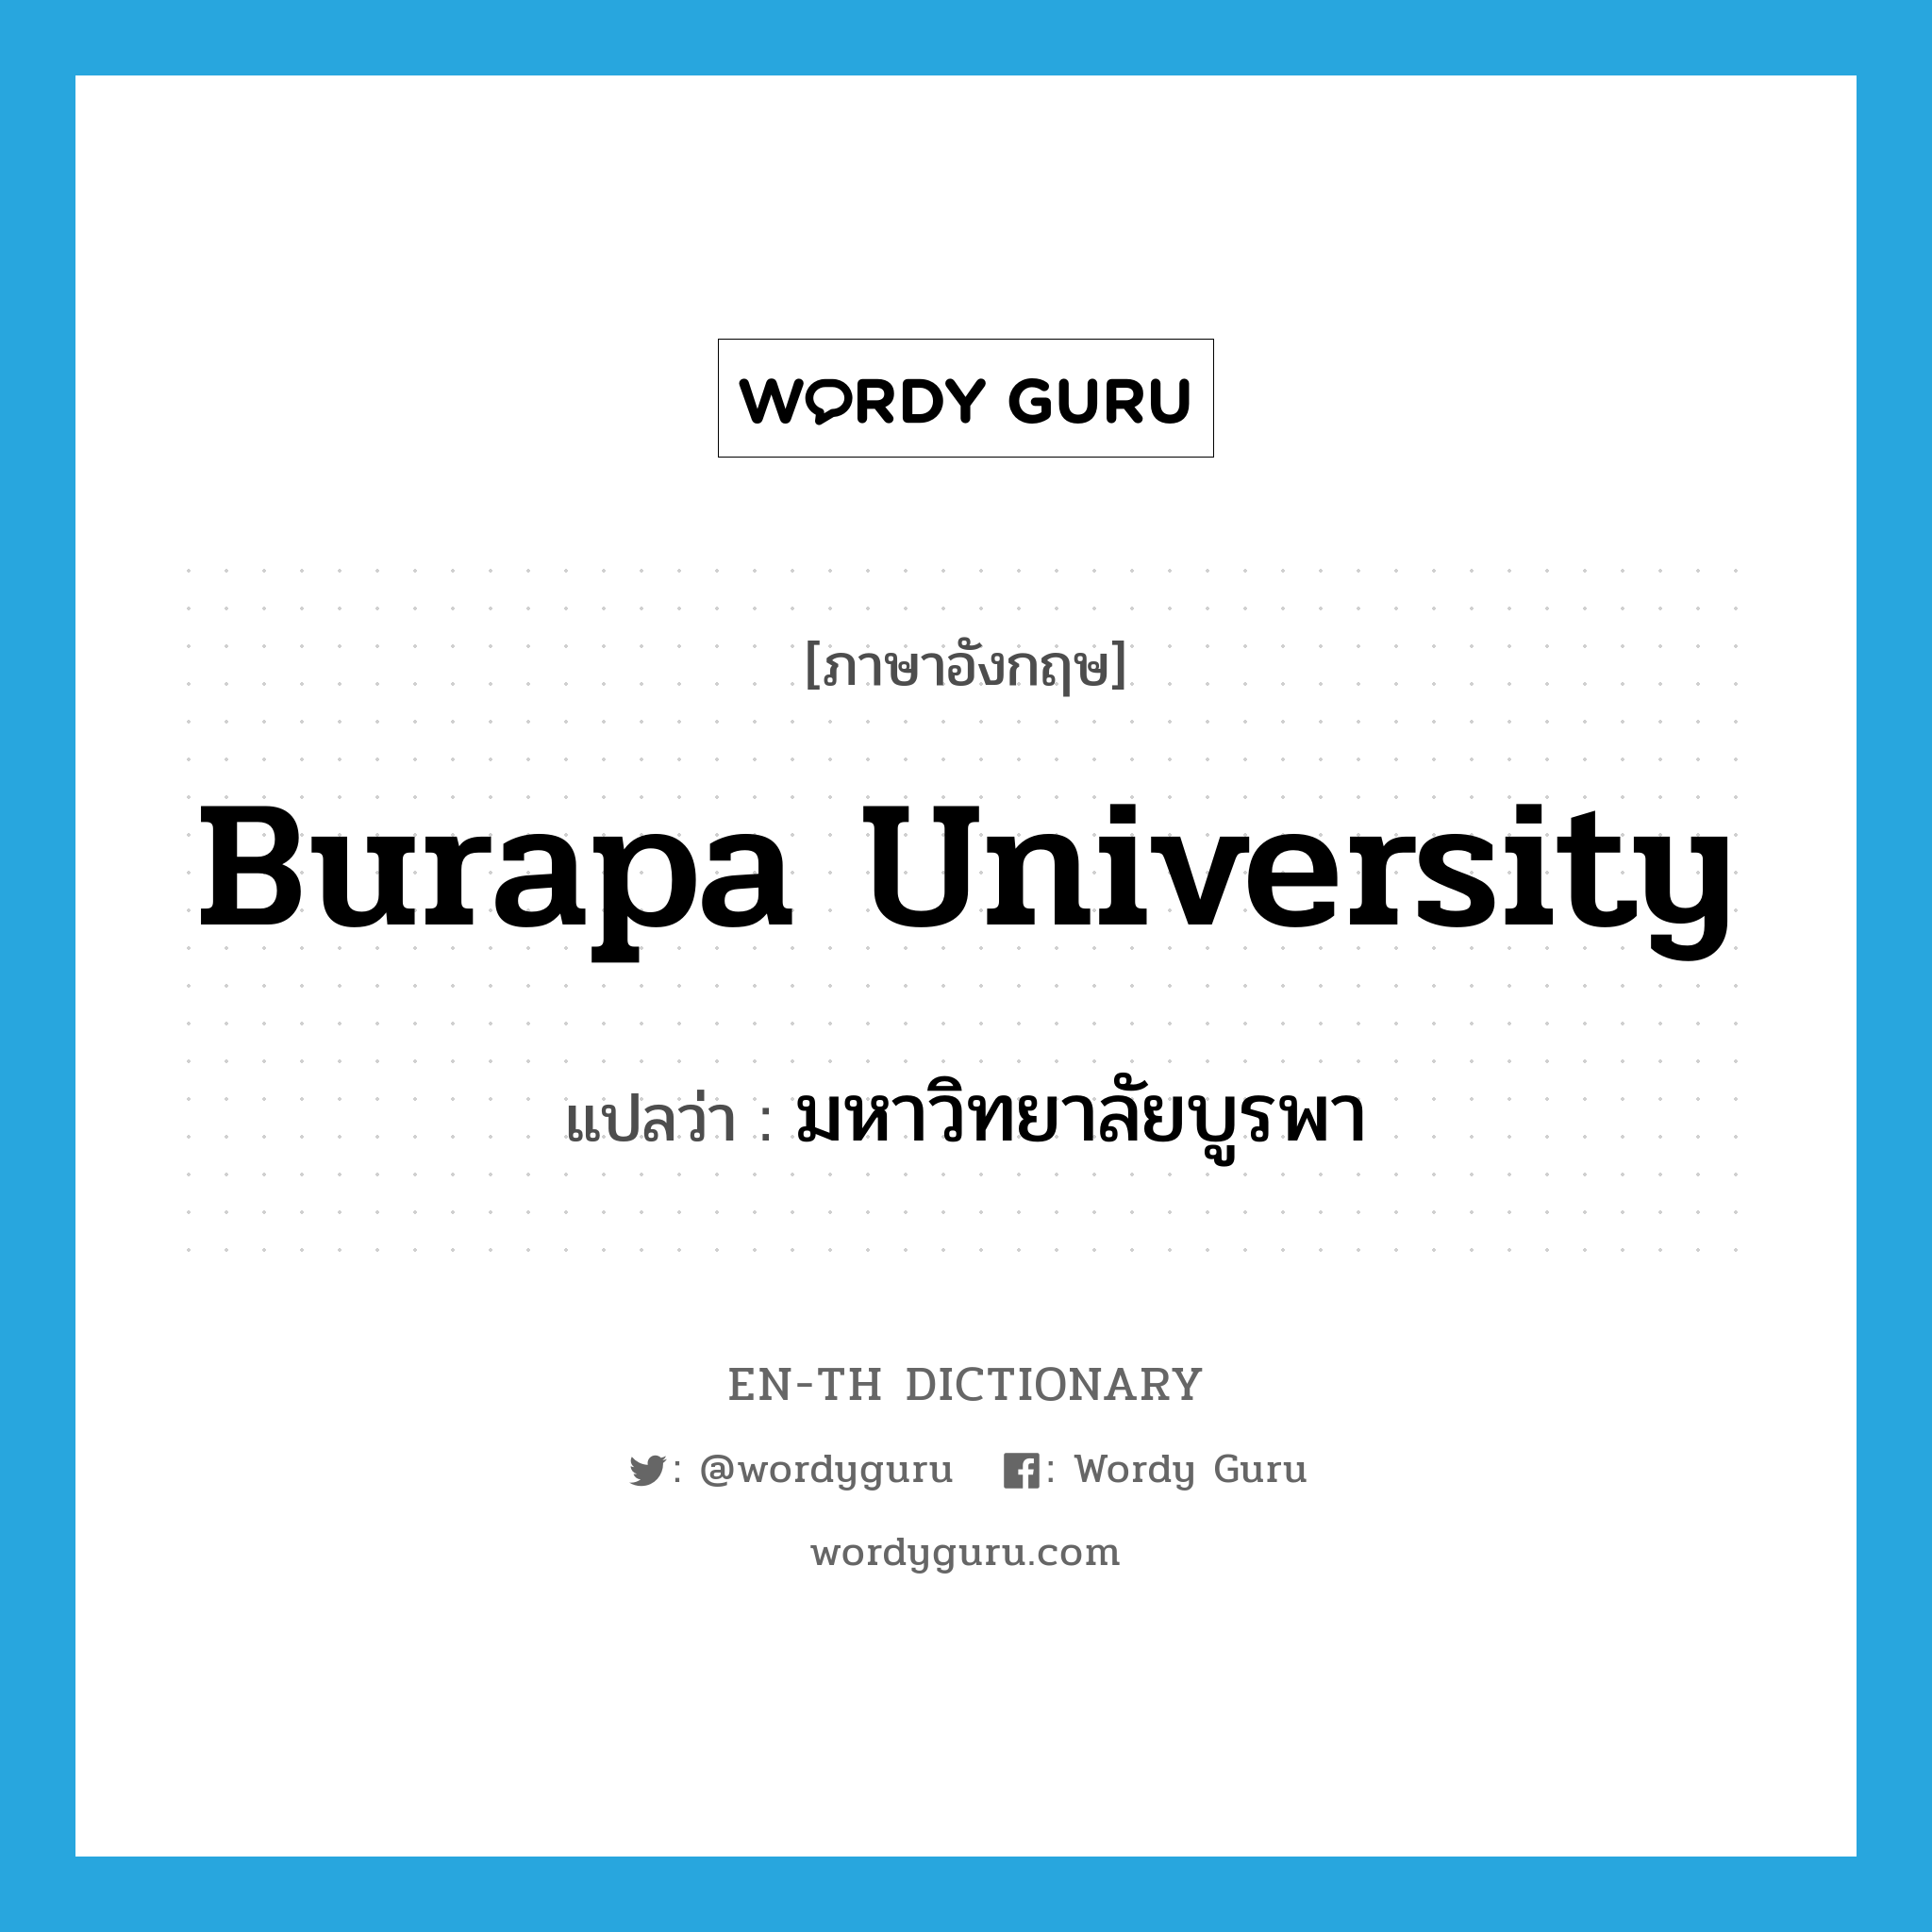 Burapa University แปลว่า?, คำศัพท์ภาษาอังกฤษ Burapa University แปลว่า มหาวิทยาลัยบูรพา ประเภท N หมวด N